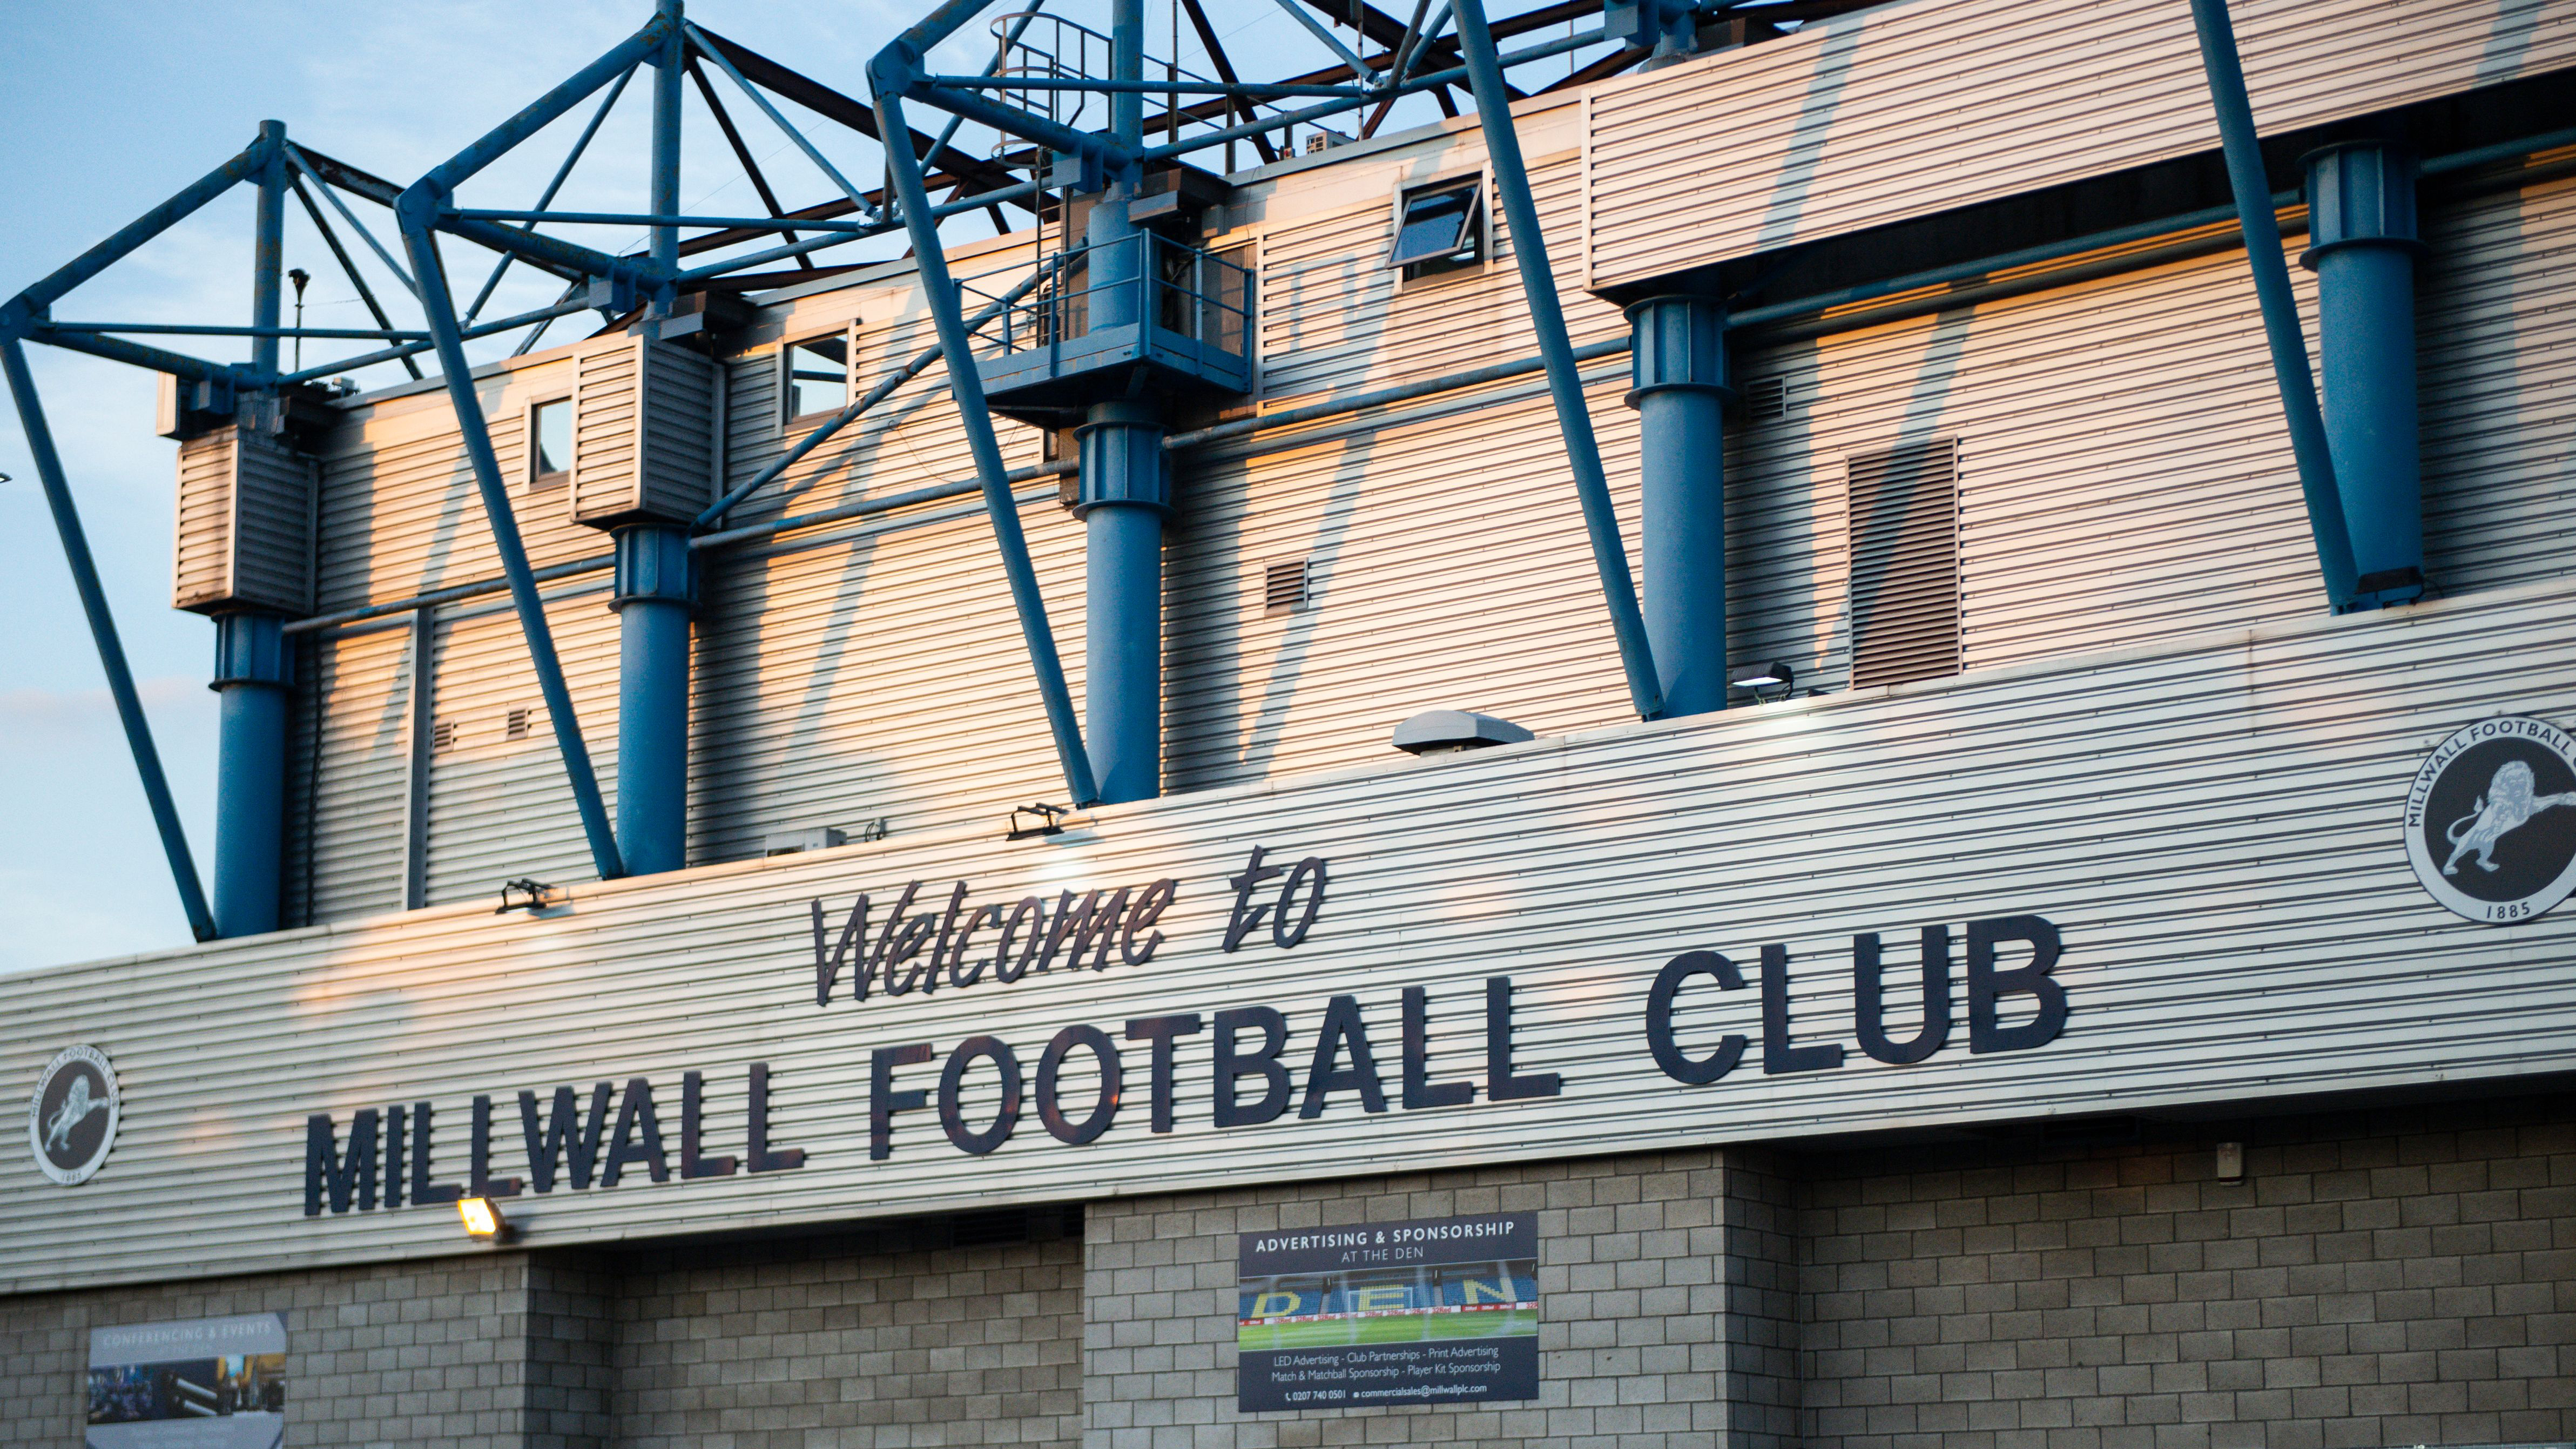 External shot of Millwall's stadium